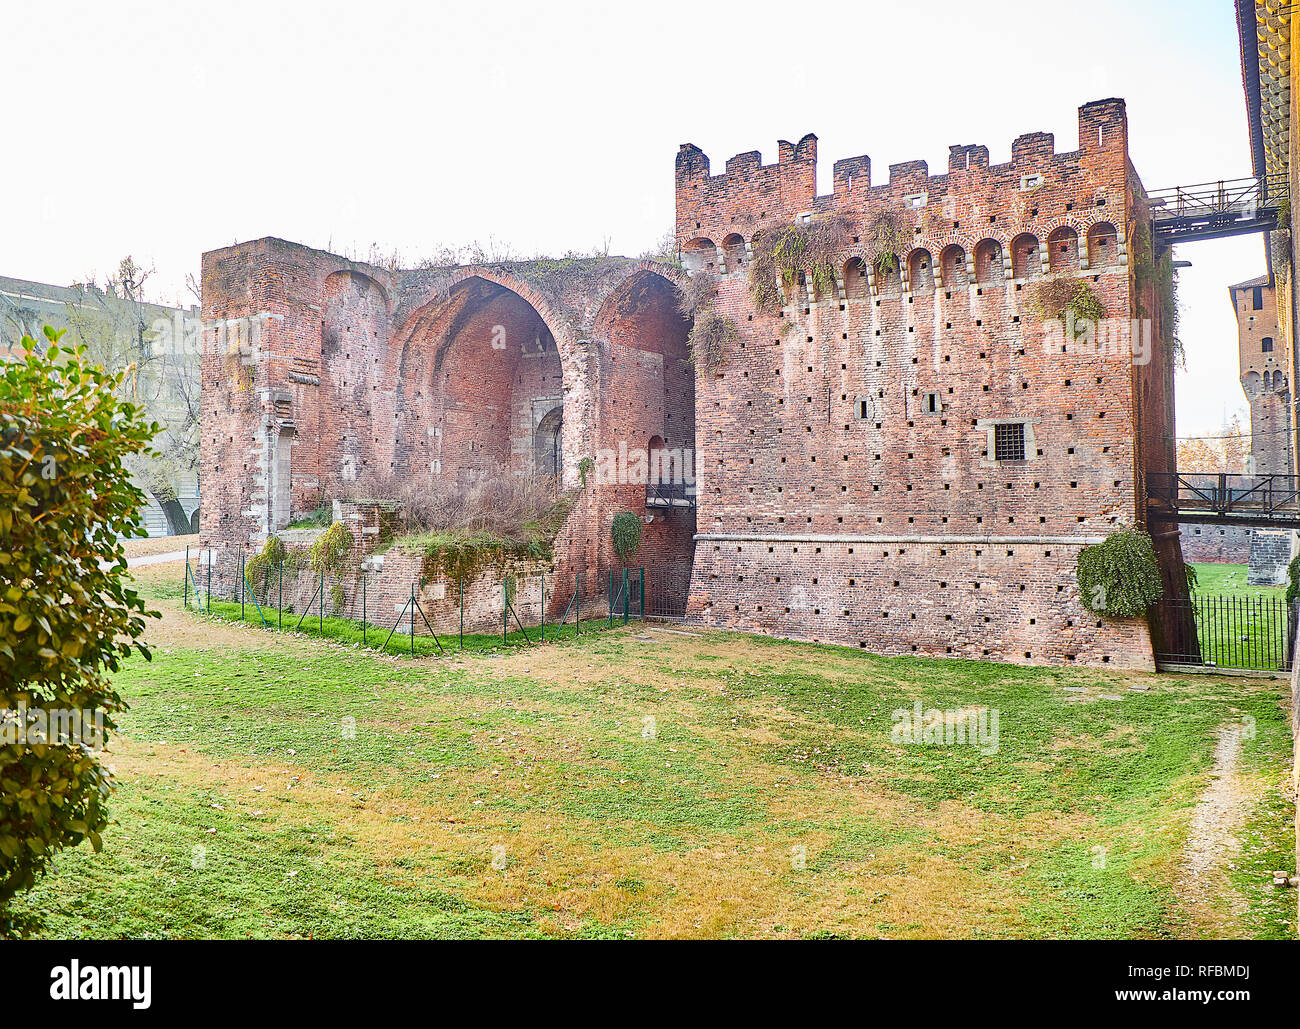 Ex rivellini di una delle porte del Castello Sforzesco, Castello Sforzesco. Milano, lombardia, italia. Foto Stock